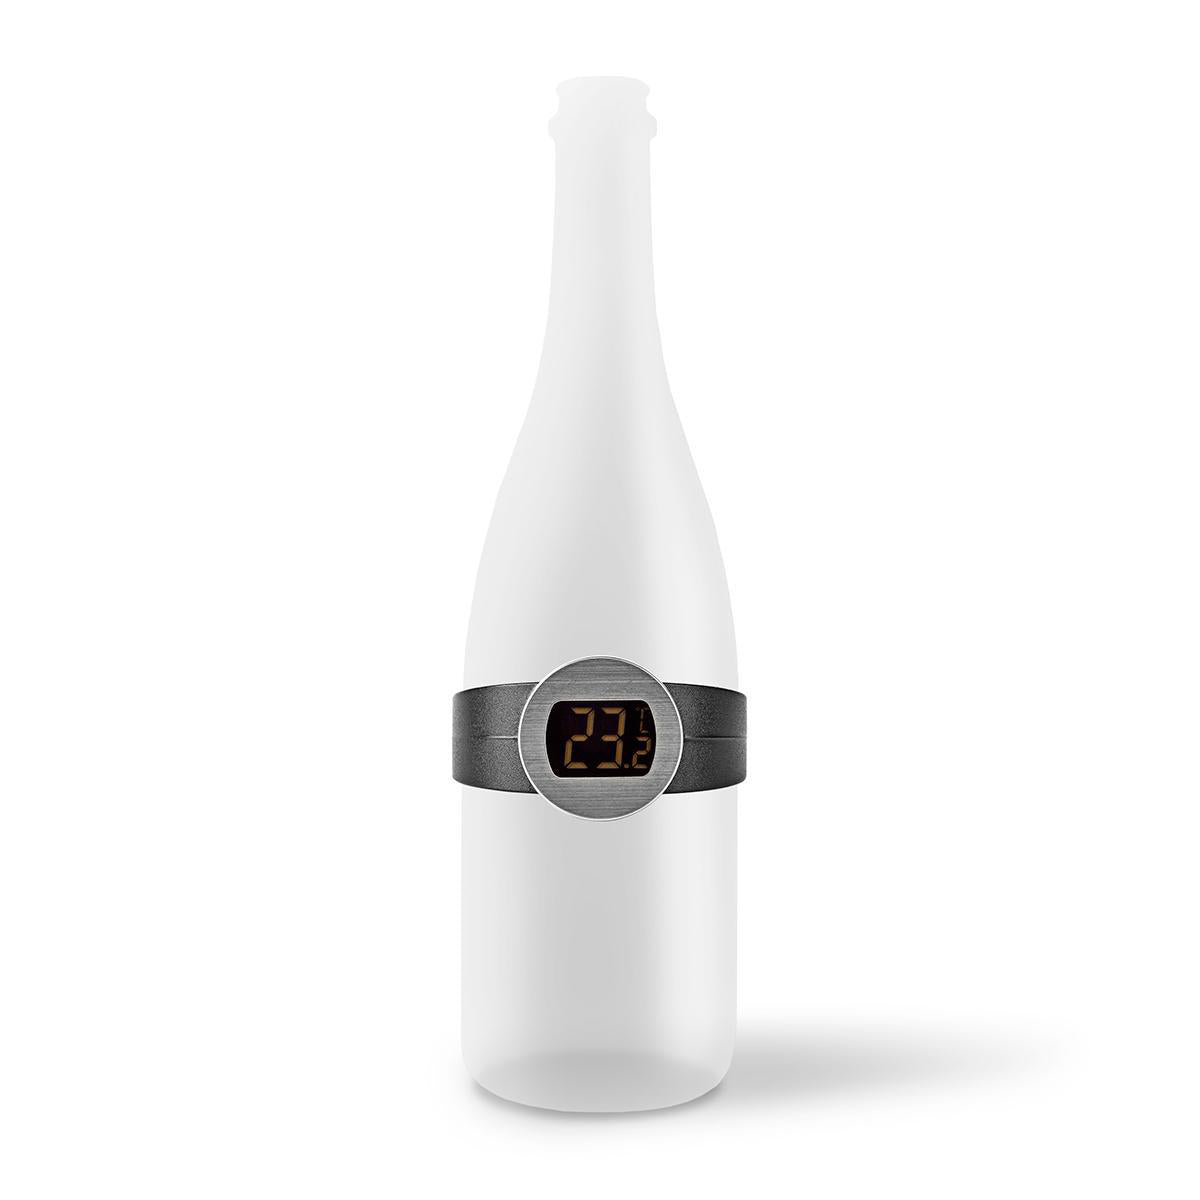 Weinthermometer Digitales Flaschenthermometer Temperaturmesser Weinflaschen Edel